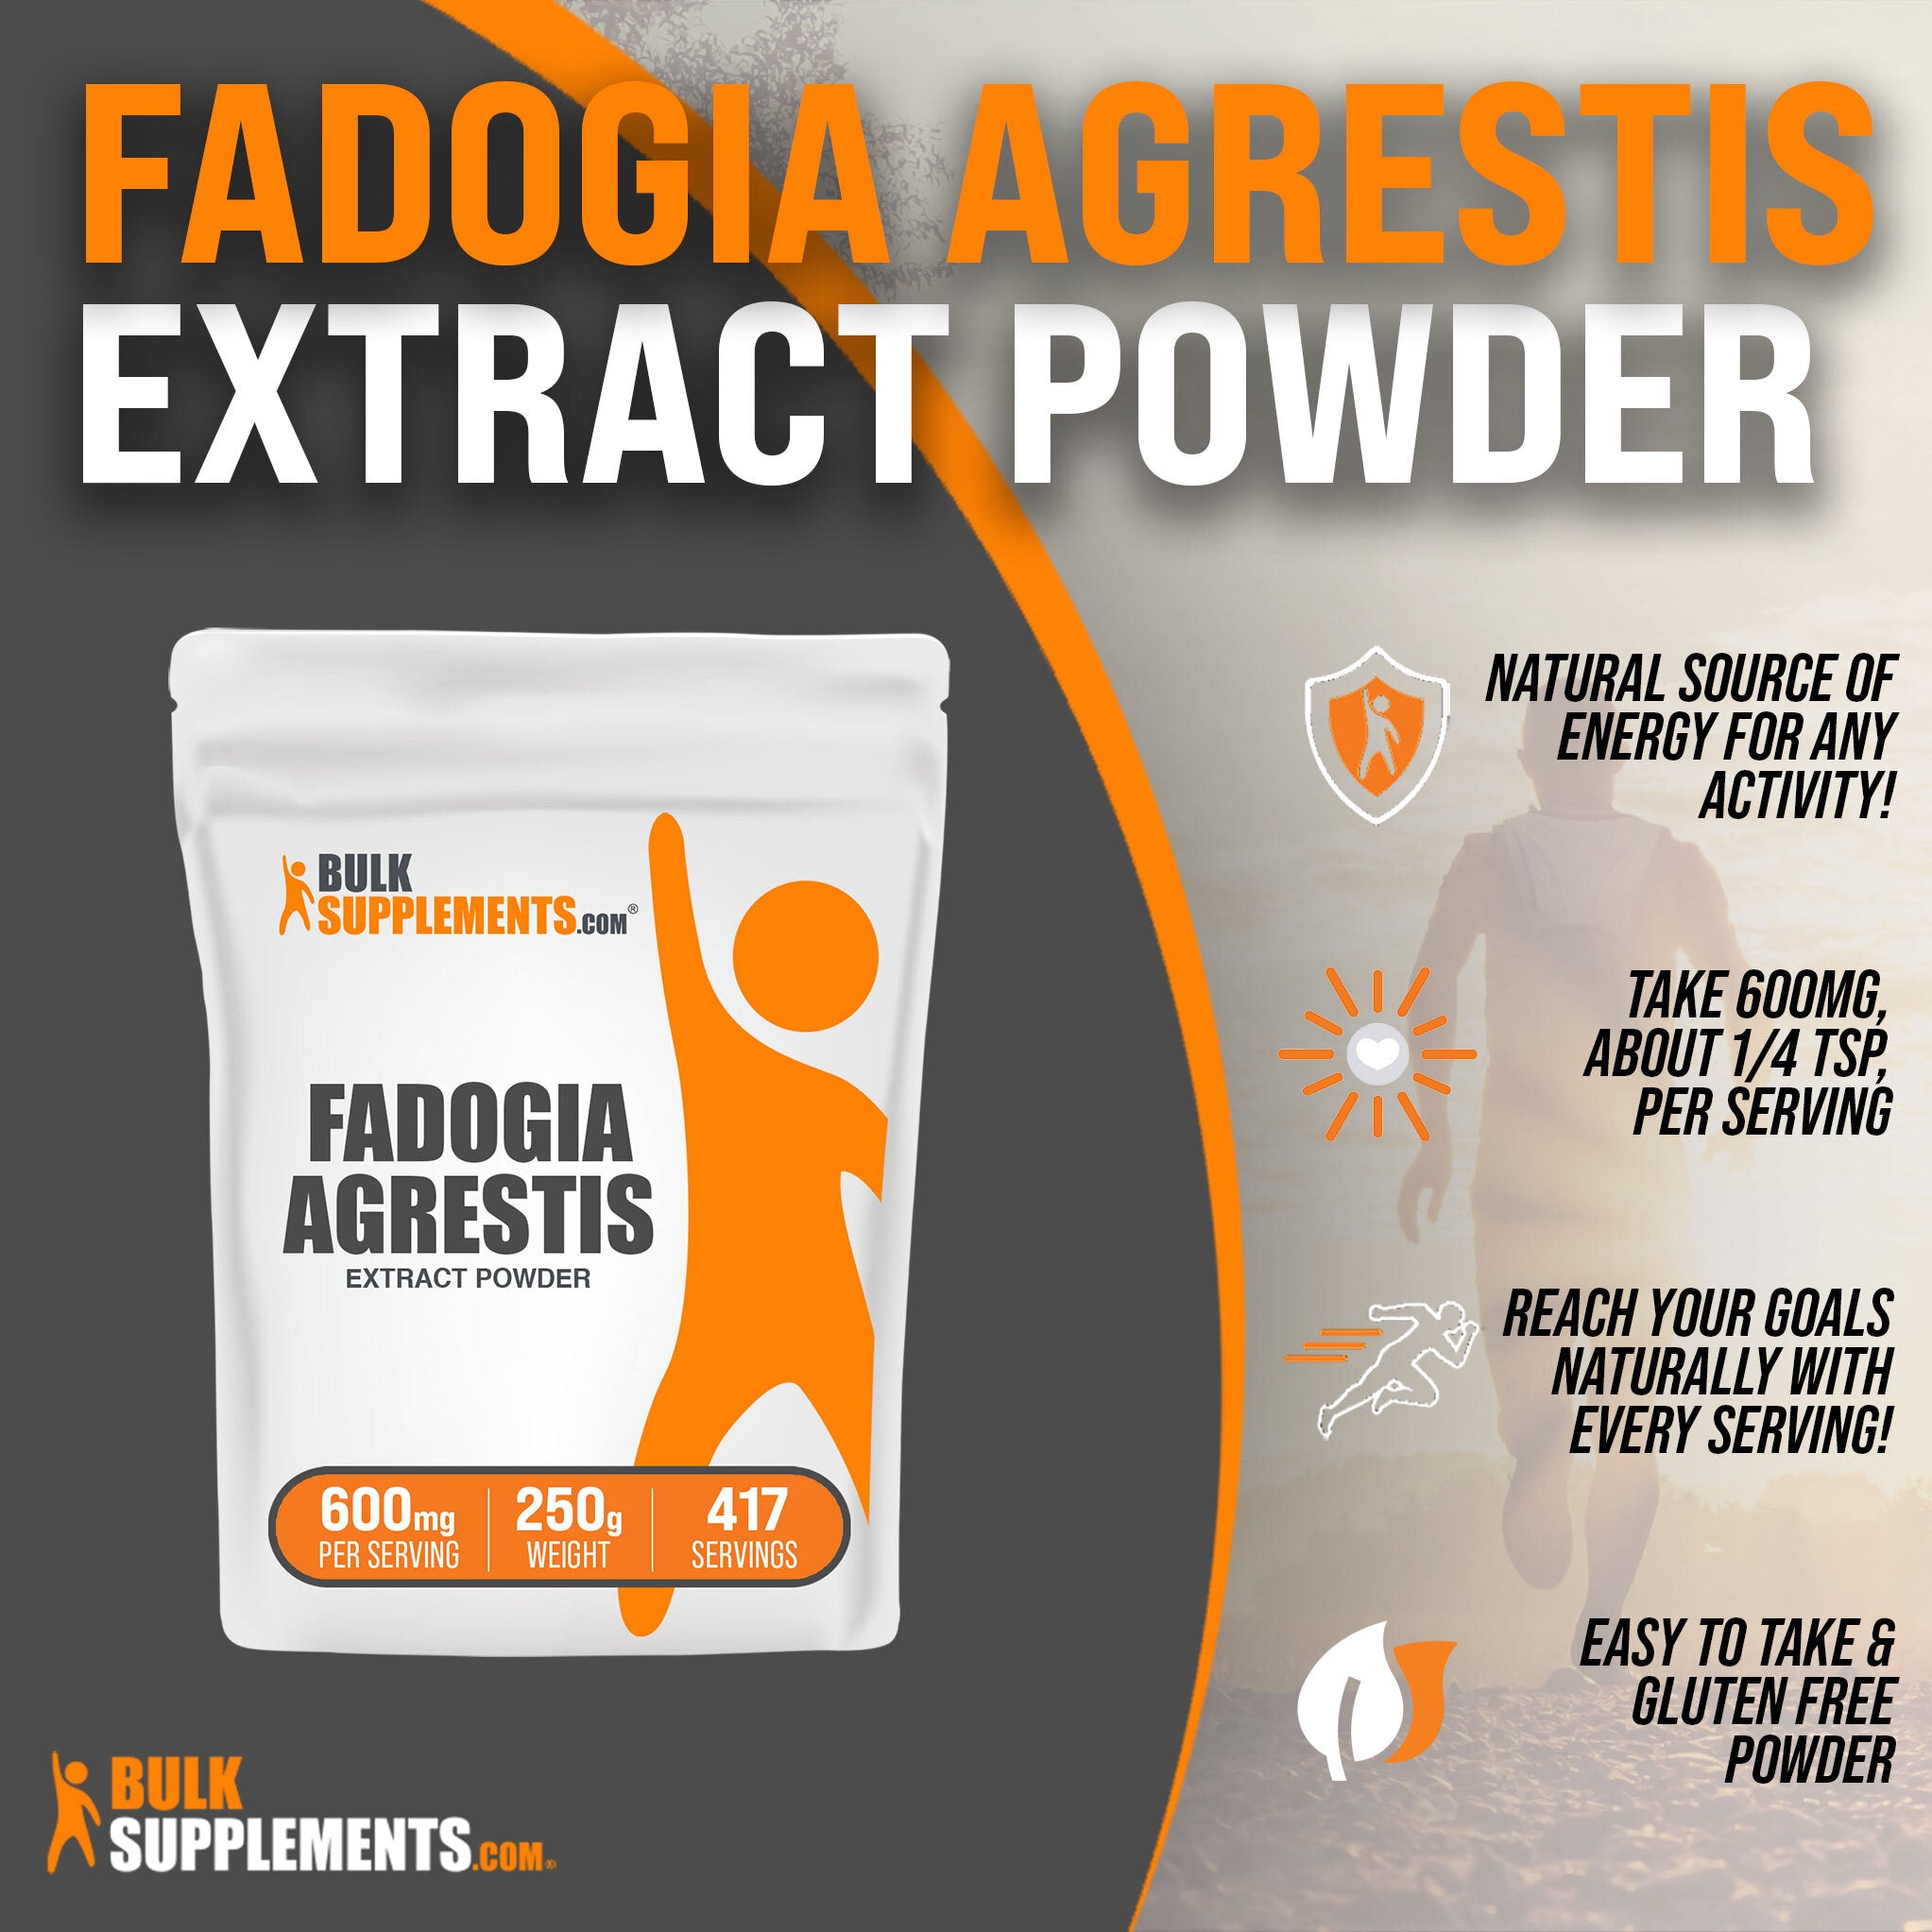 Pudră extract Fadogia Agrestis